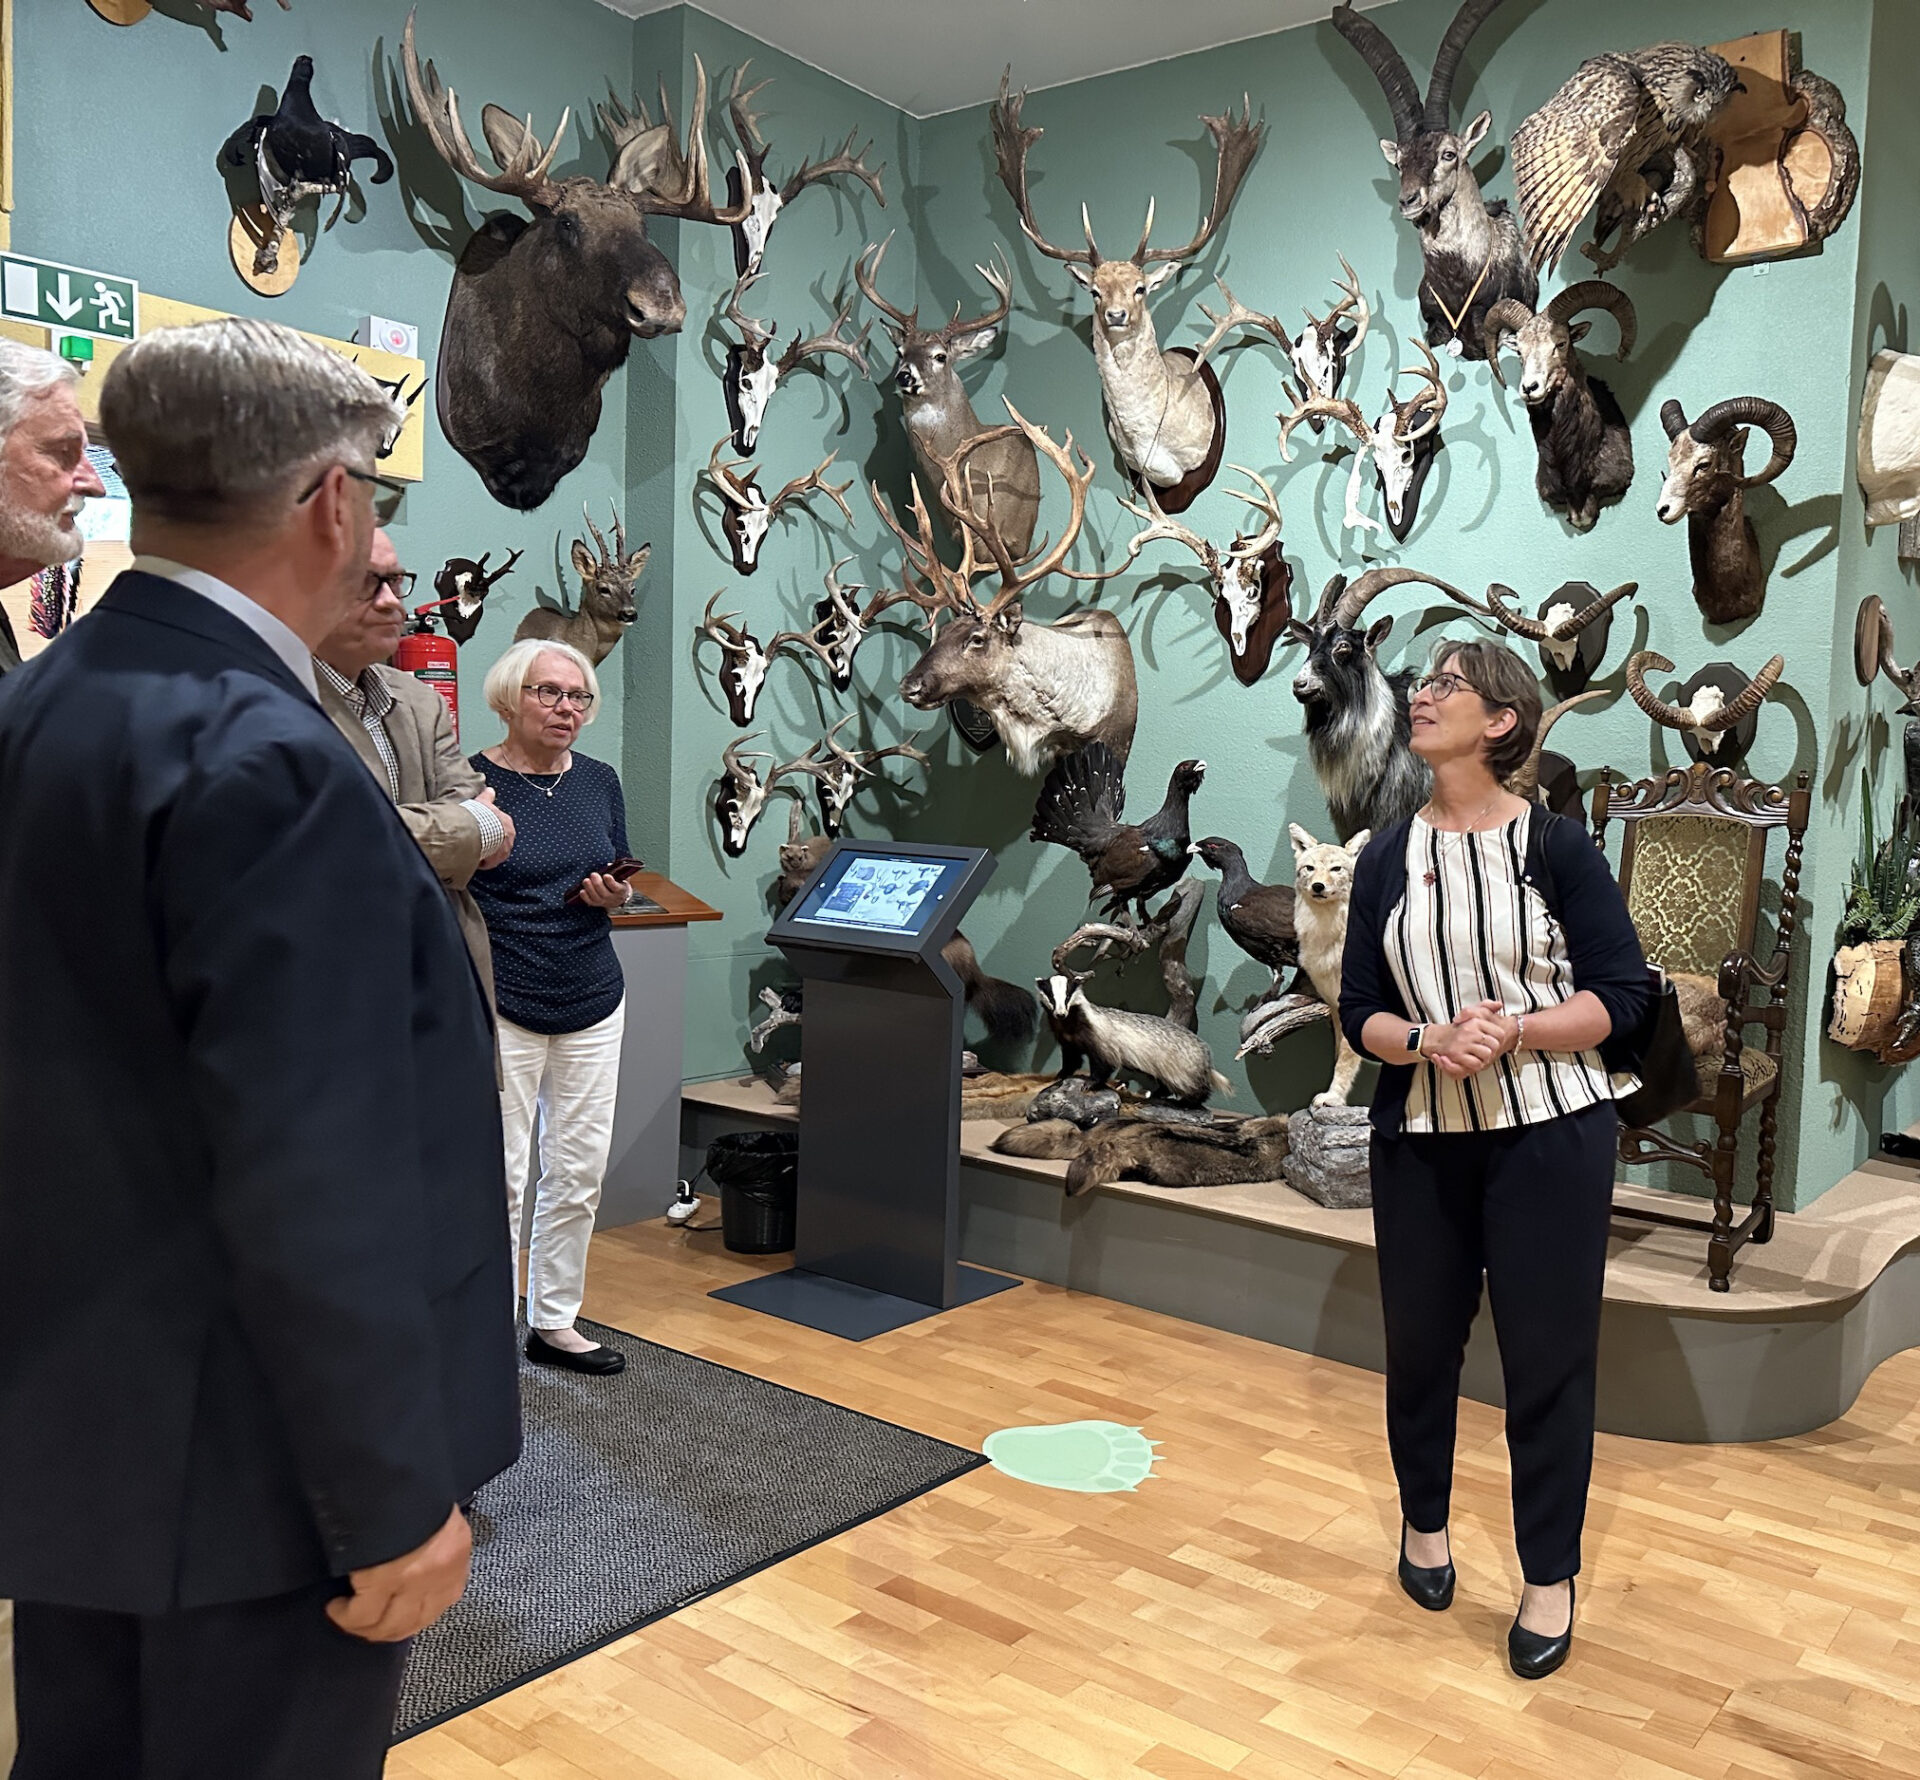 Maa- ja metsätalousministeri Sari Essayah vieraili Suomen Metsästysmuseossa Riihimäellä Poliitikon museoharjoittelu -viikolla.